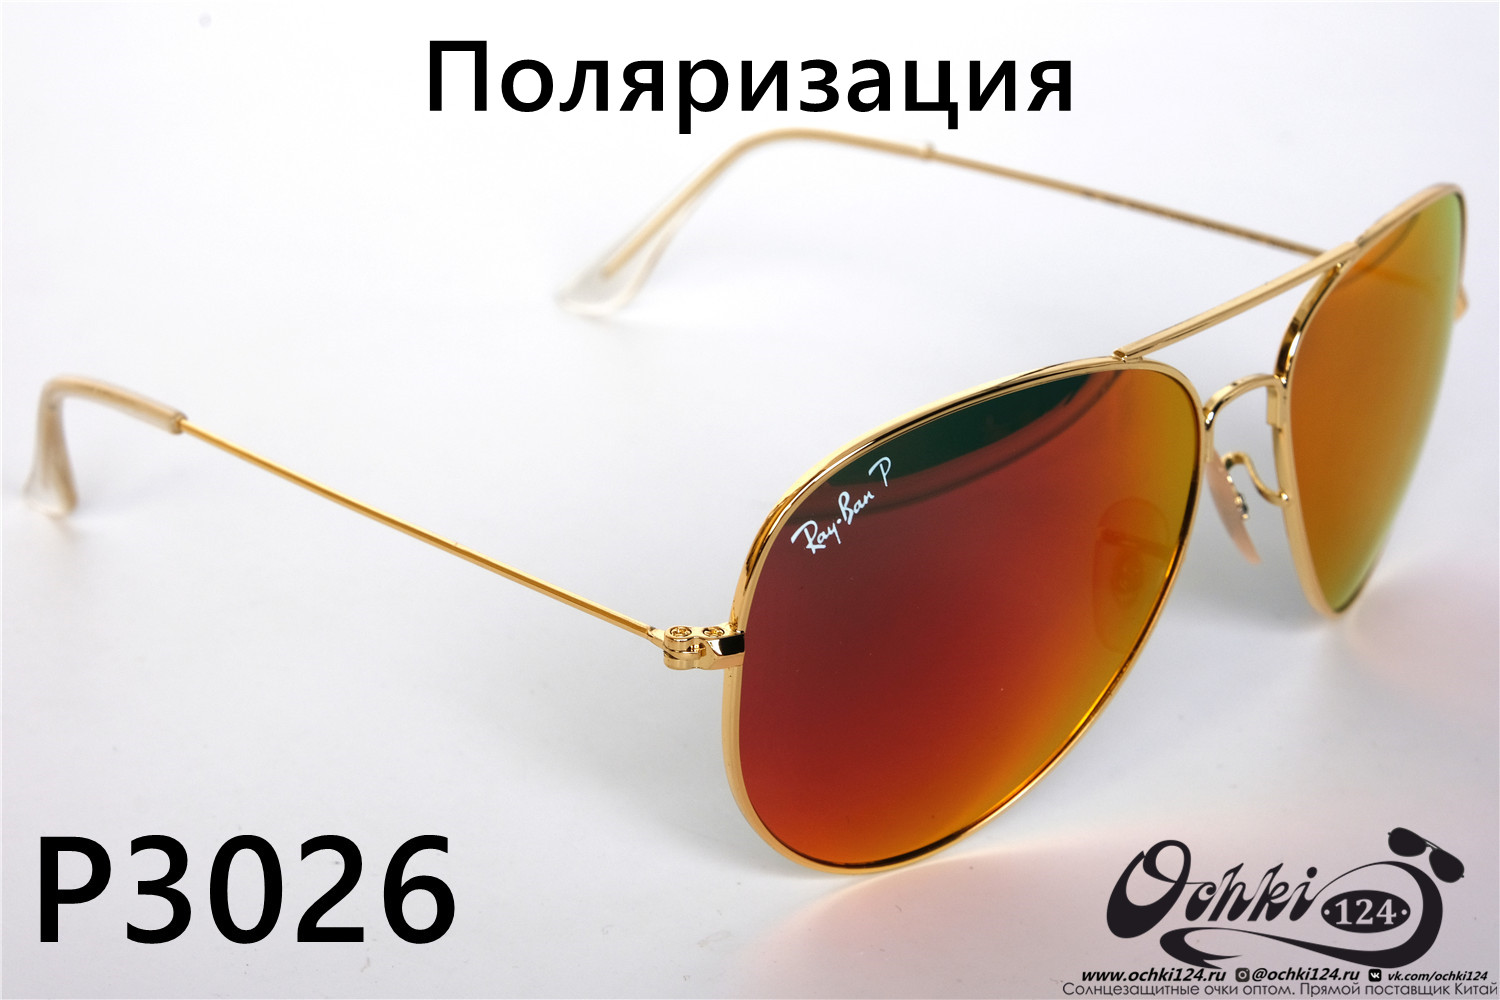  Солнцезащитные очки картинка 2022 Унисекс Поляризованные Авиаторы Rote Sonne P3026-22 